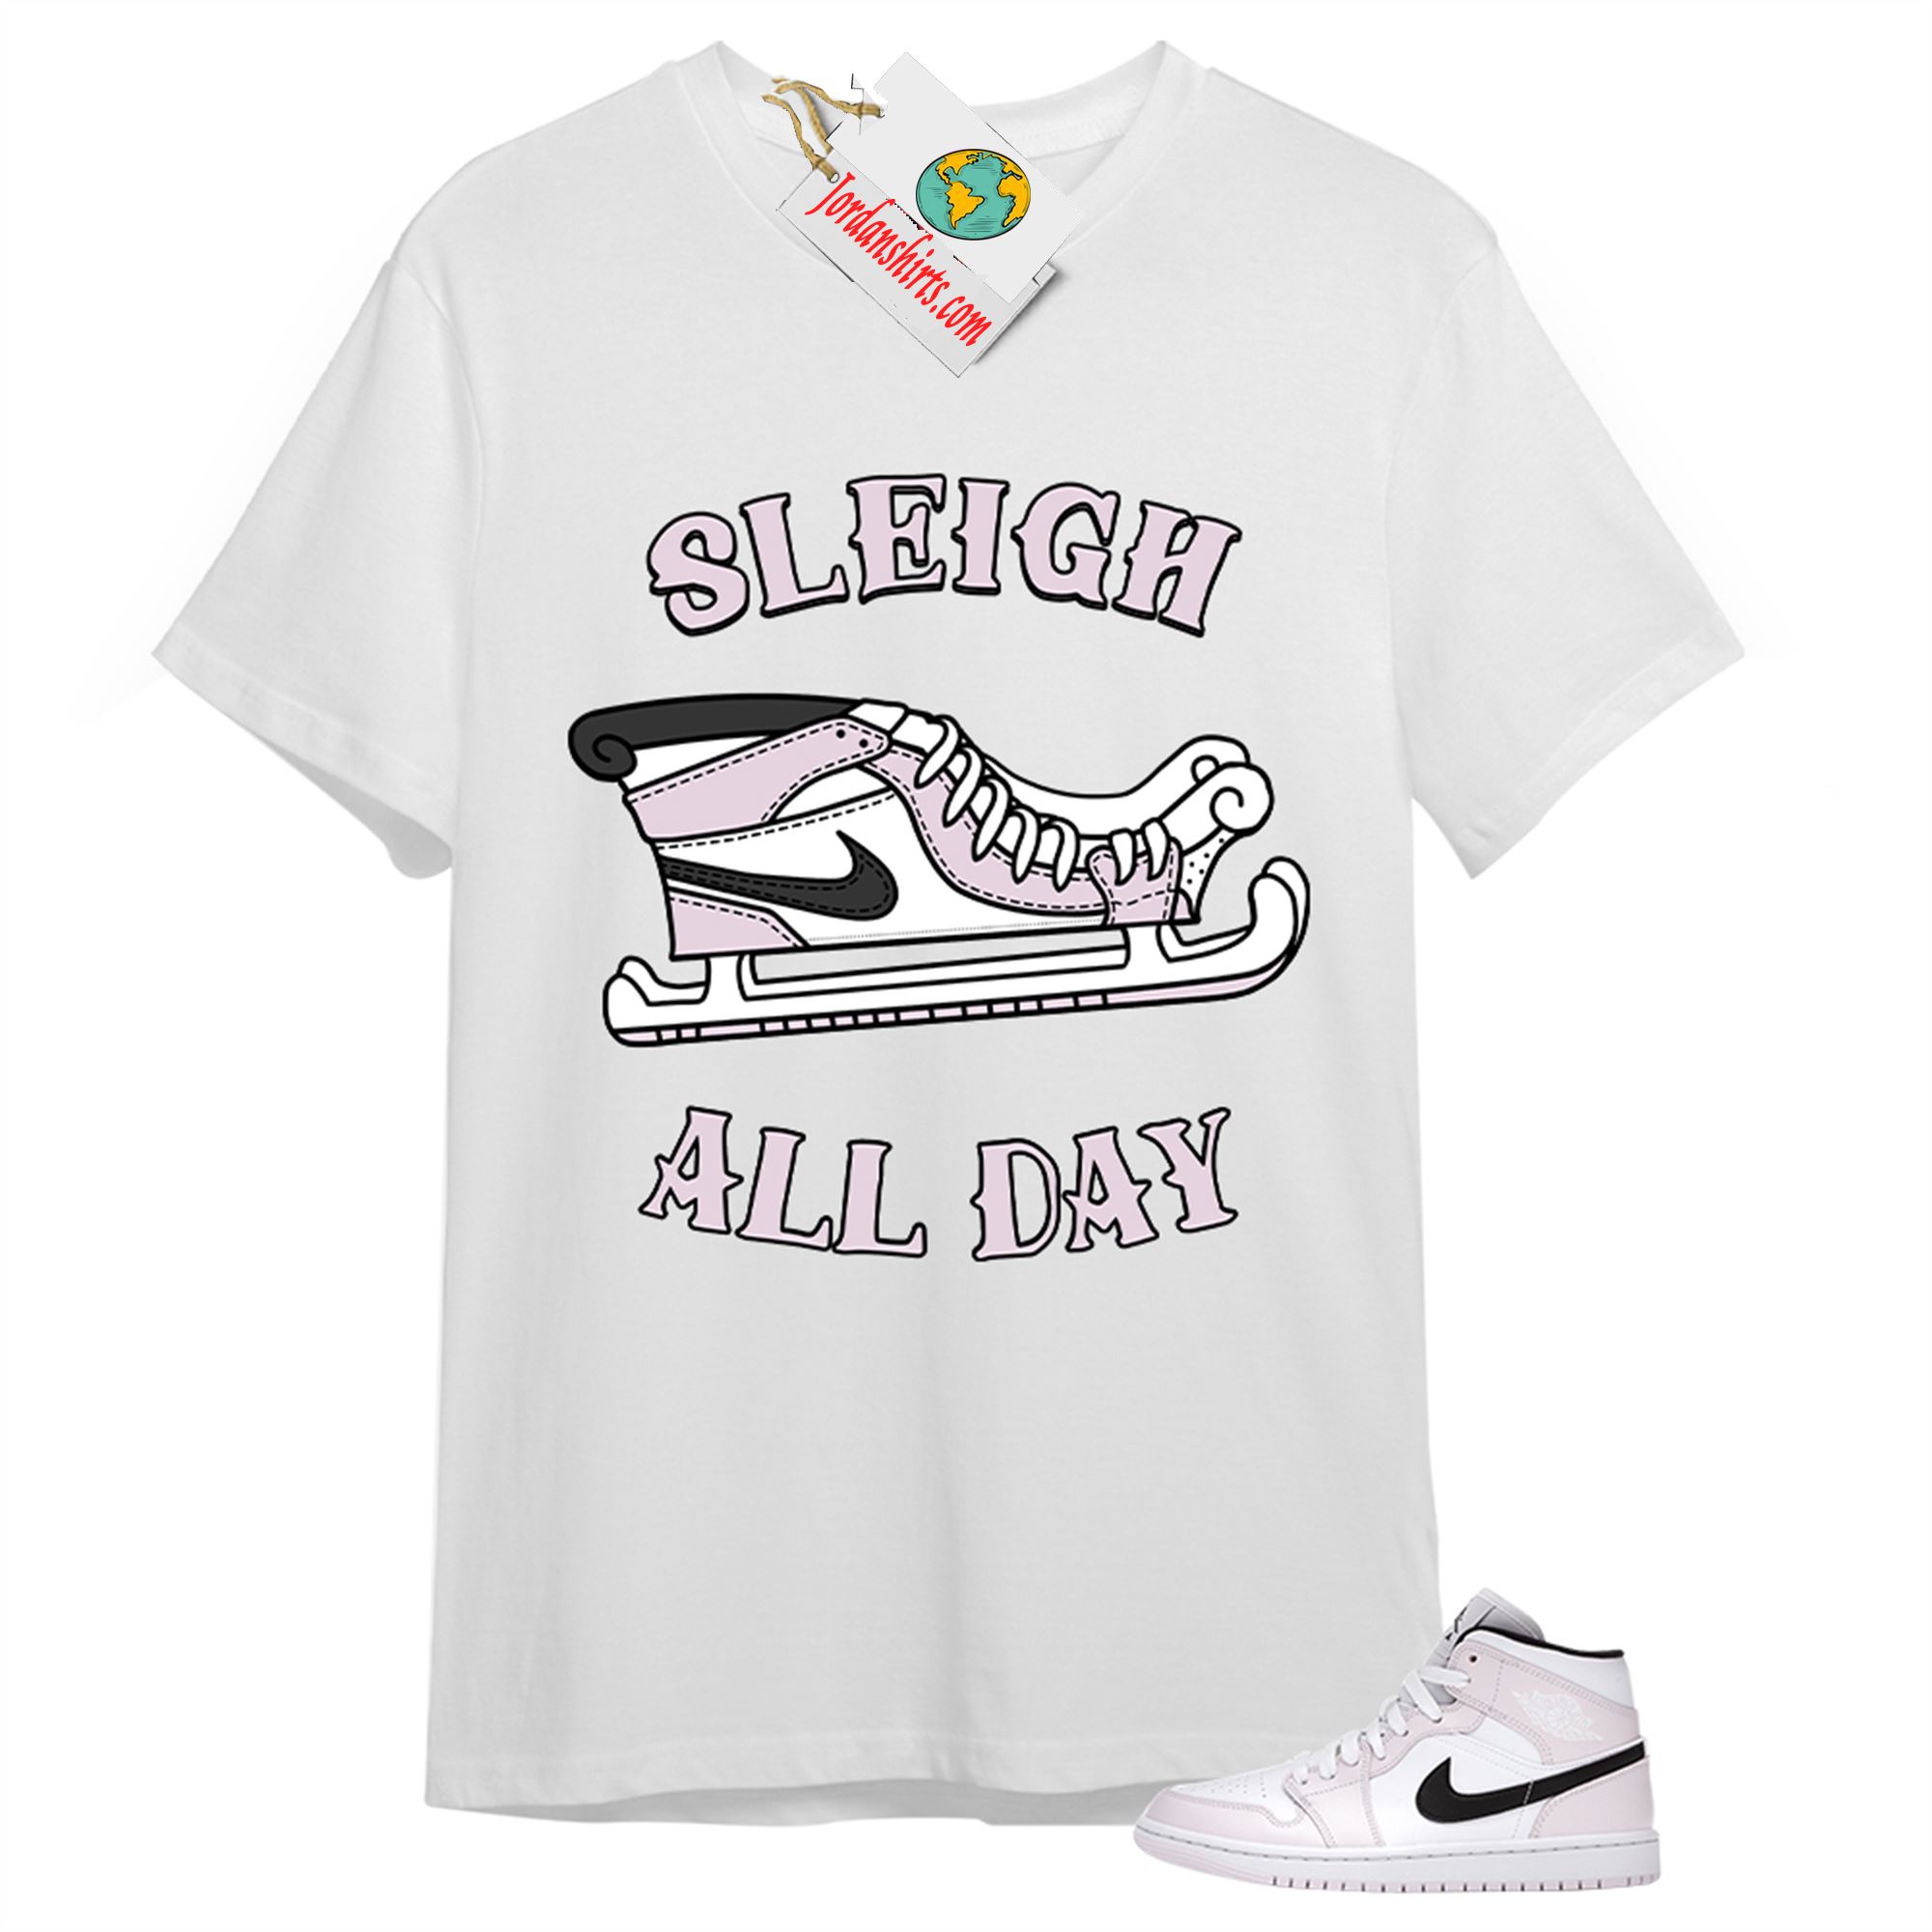 Jordan 1 Shirt, Sneaker Sleigh White T-shirt Air Jordan 1 Barely Rose 1s Plus Size Up To 5xl